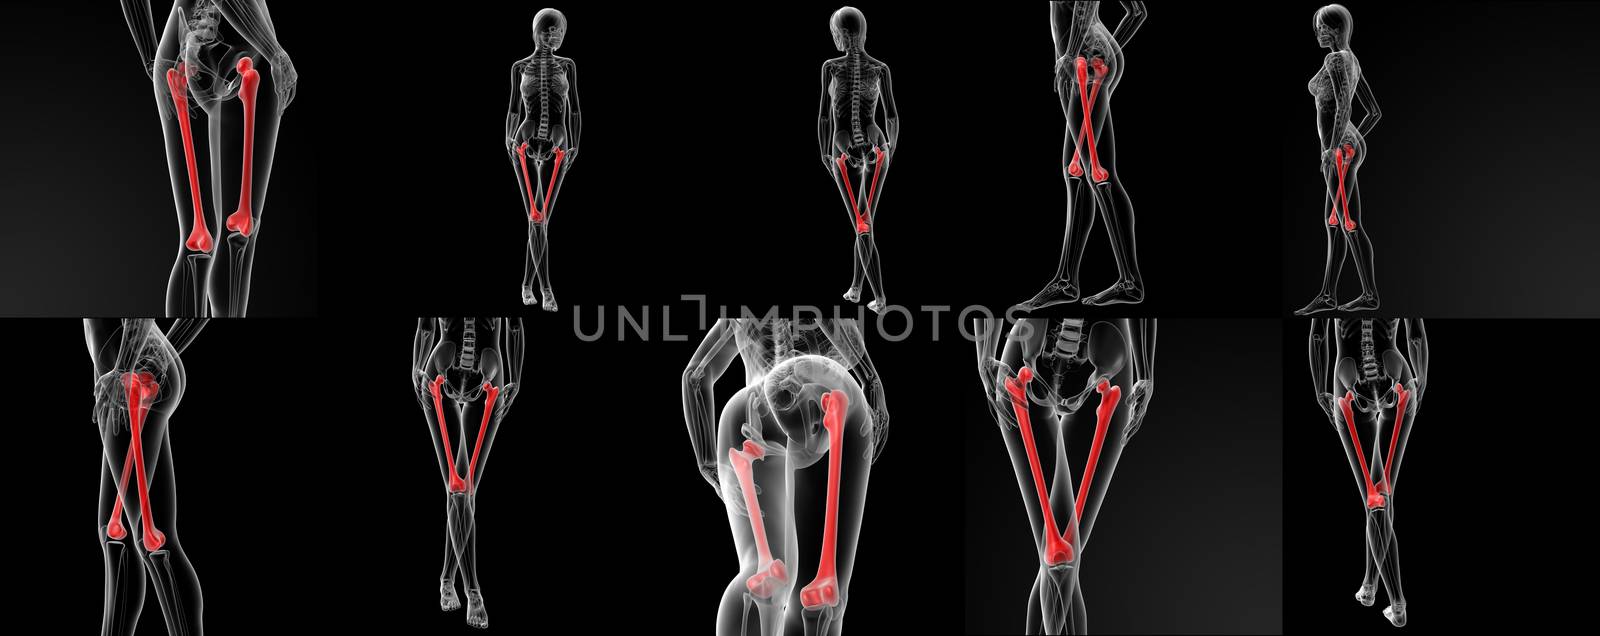 3D rendering illustration of the femur bone